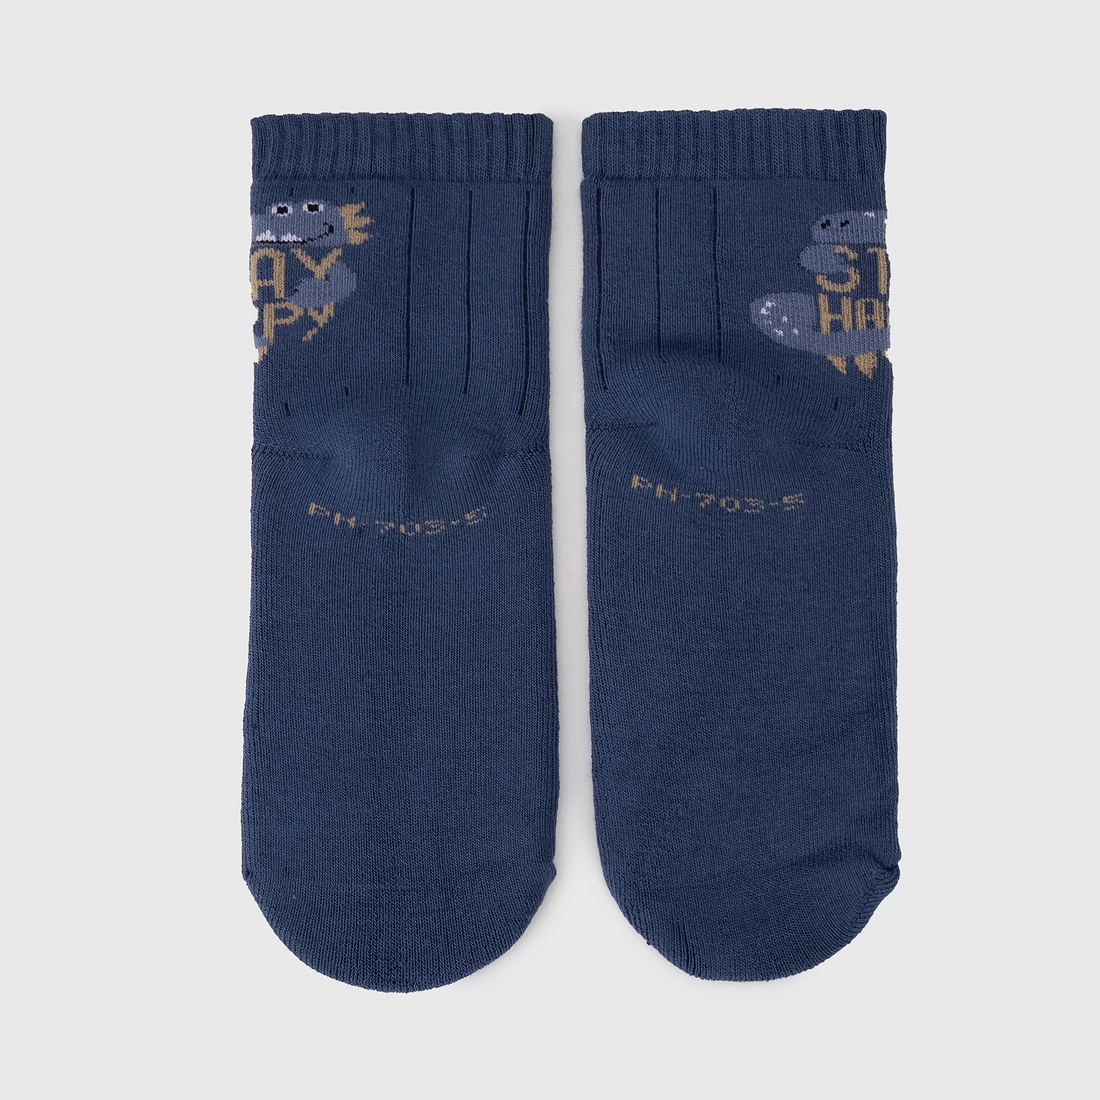 Фото Шкарпетки для хлопчика PierLone PH-703 5-6 років Синій (2000990180308A)